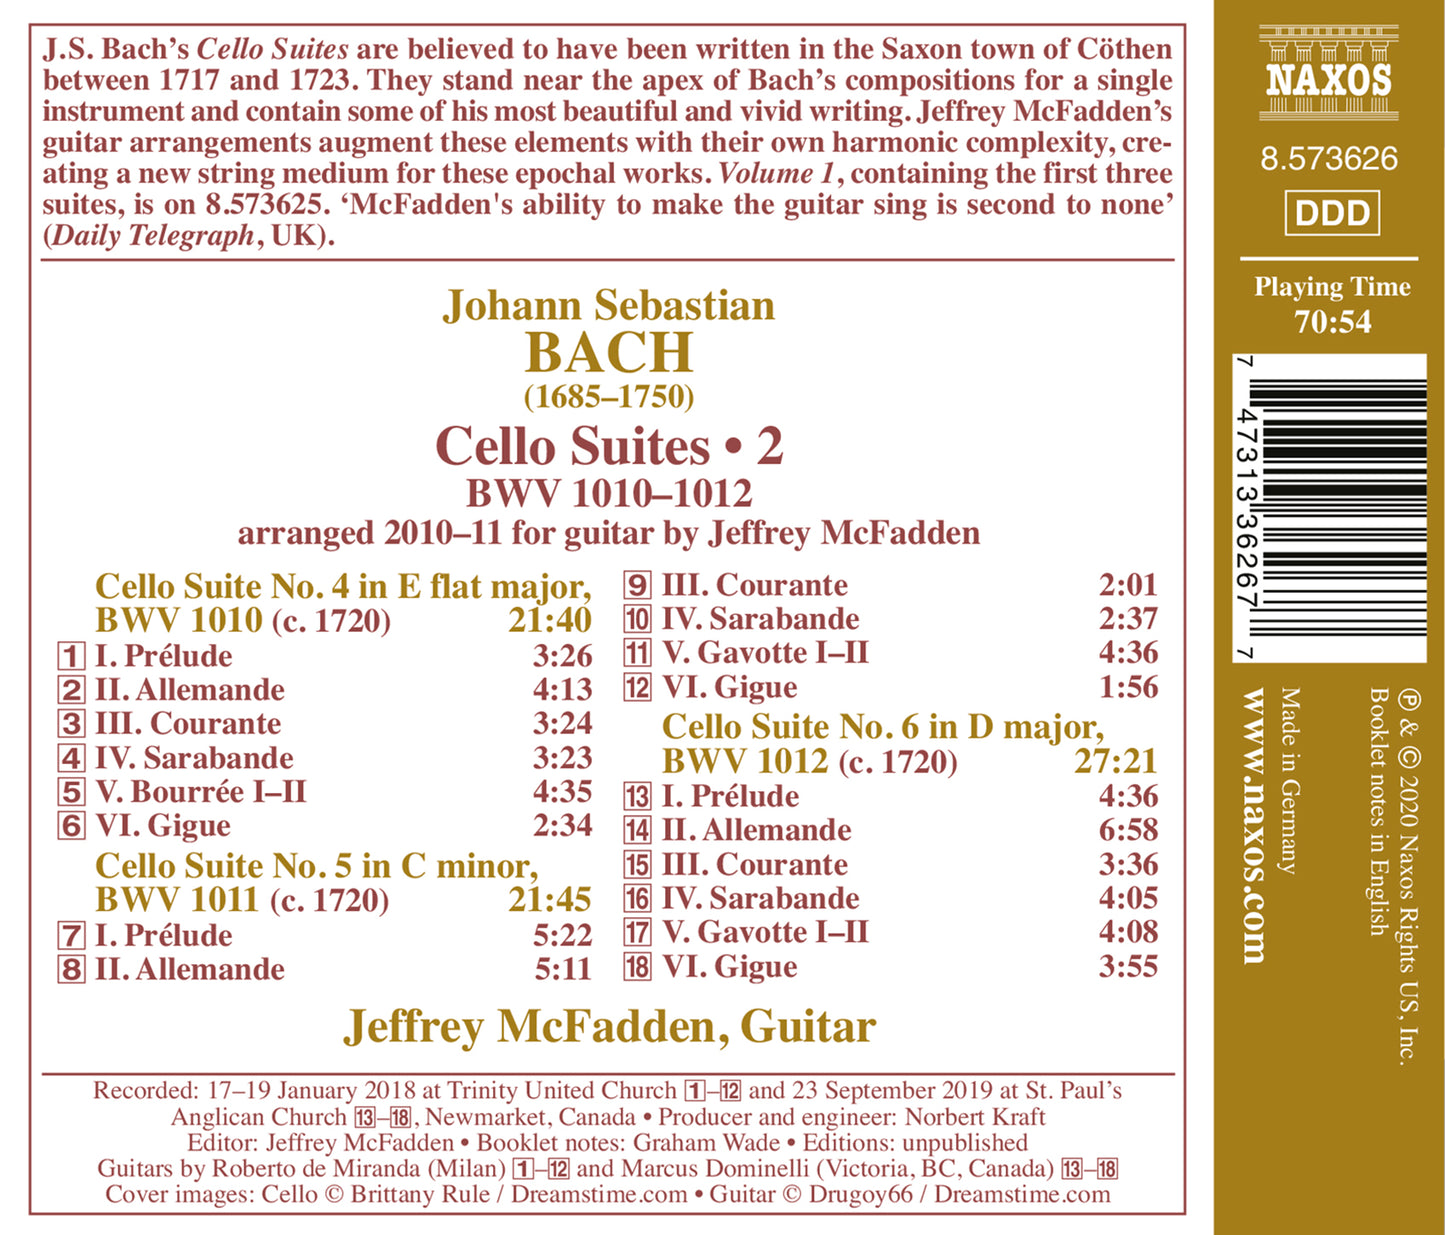 J.S. Bach: Cello Suites, Vol. 2 (Arr. J. Mcfadden For Guitar